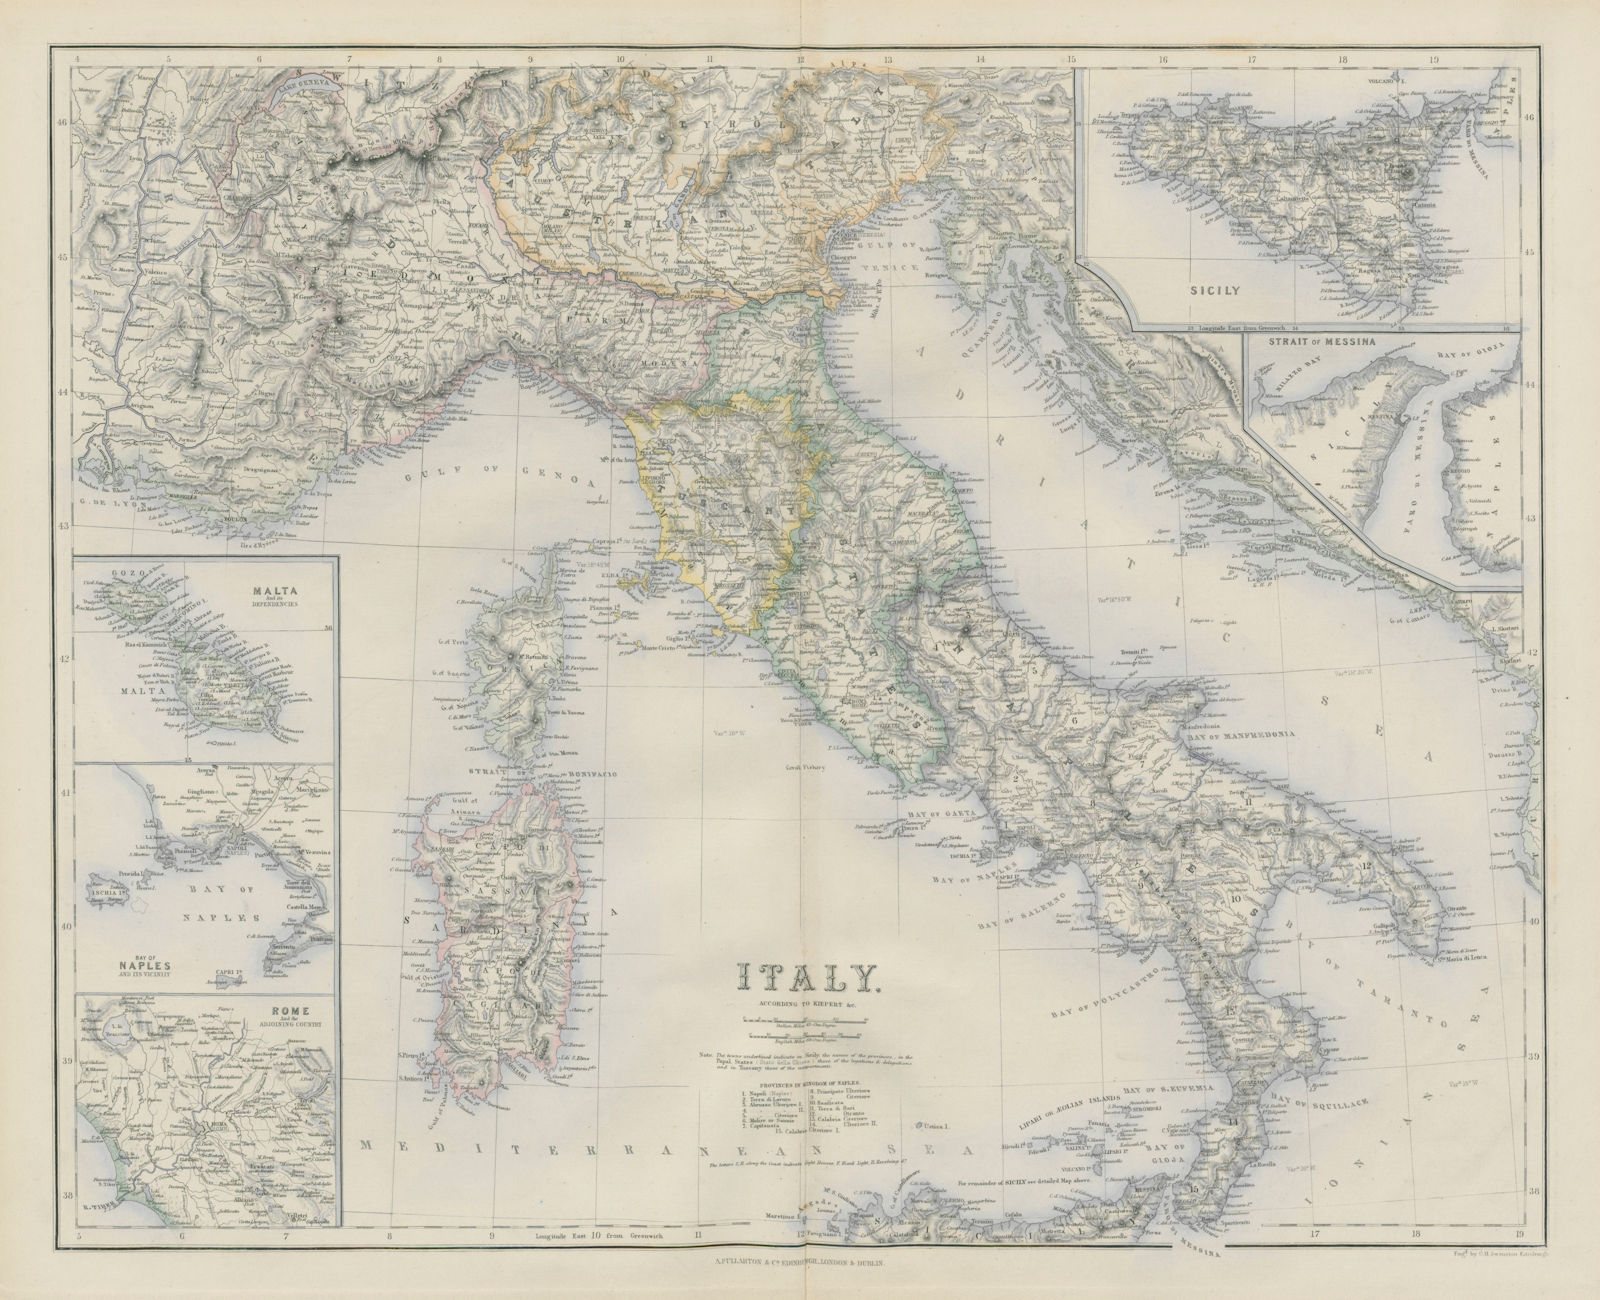 Italy with Savoy/Savoie. Malta Naples Rome Strait of Messina. SWANSTON 1860 map